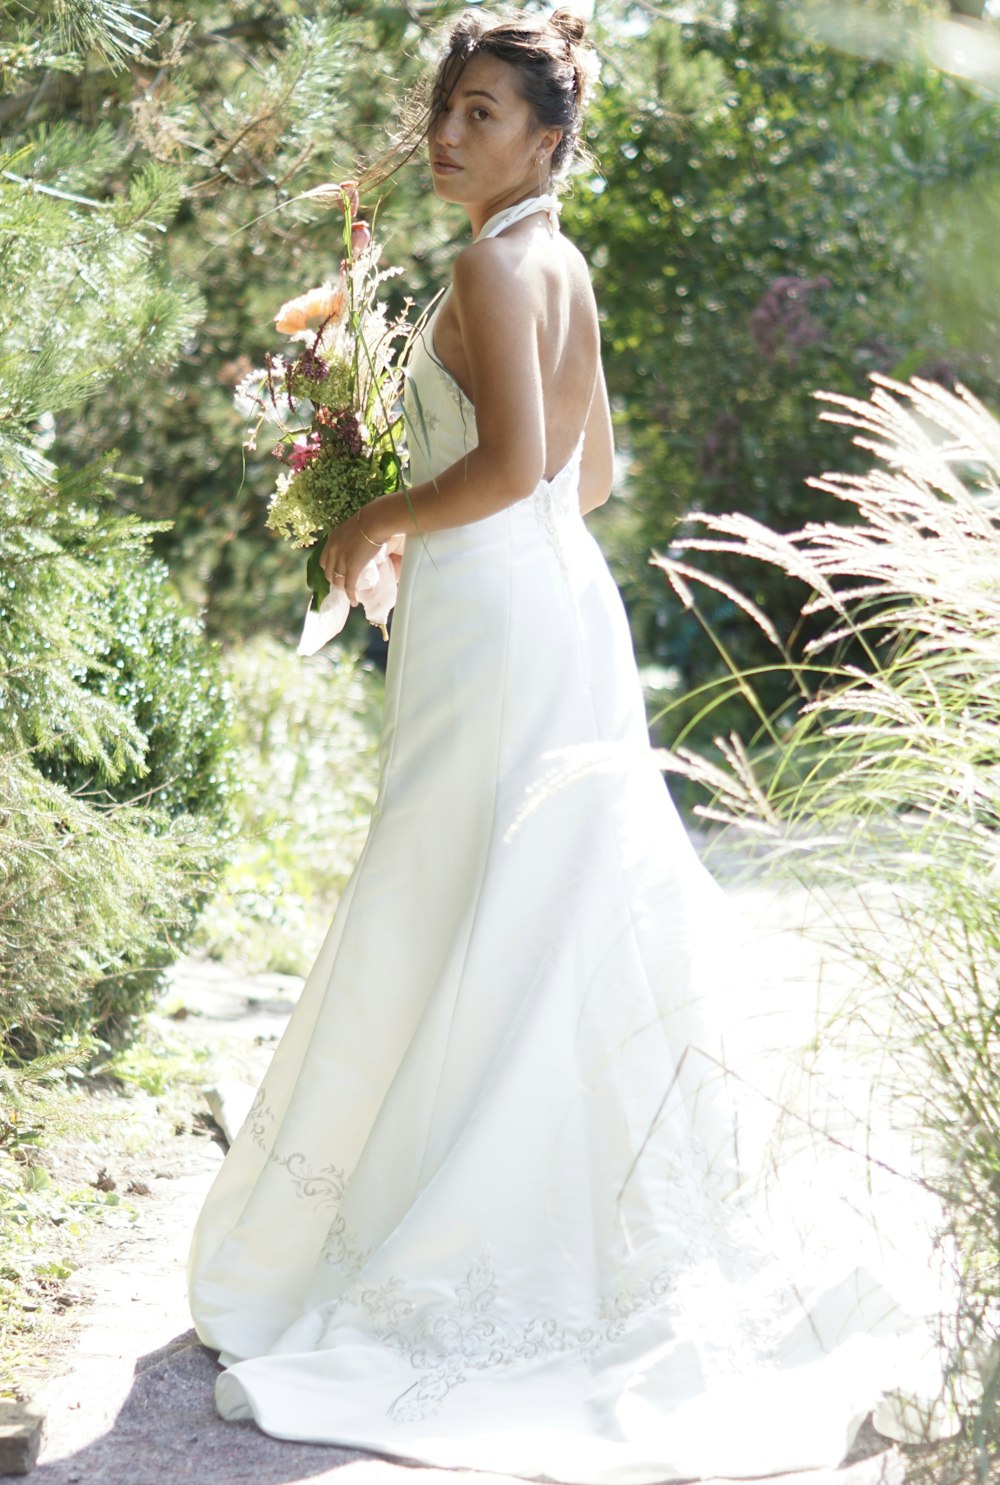 Frau im weißen Brautkleid mit Blumenstrauß